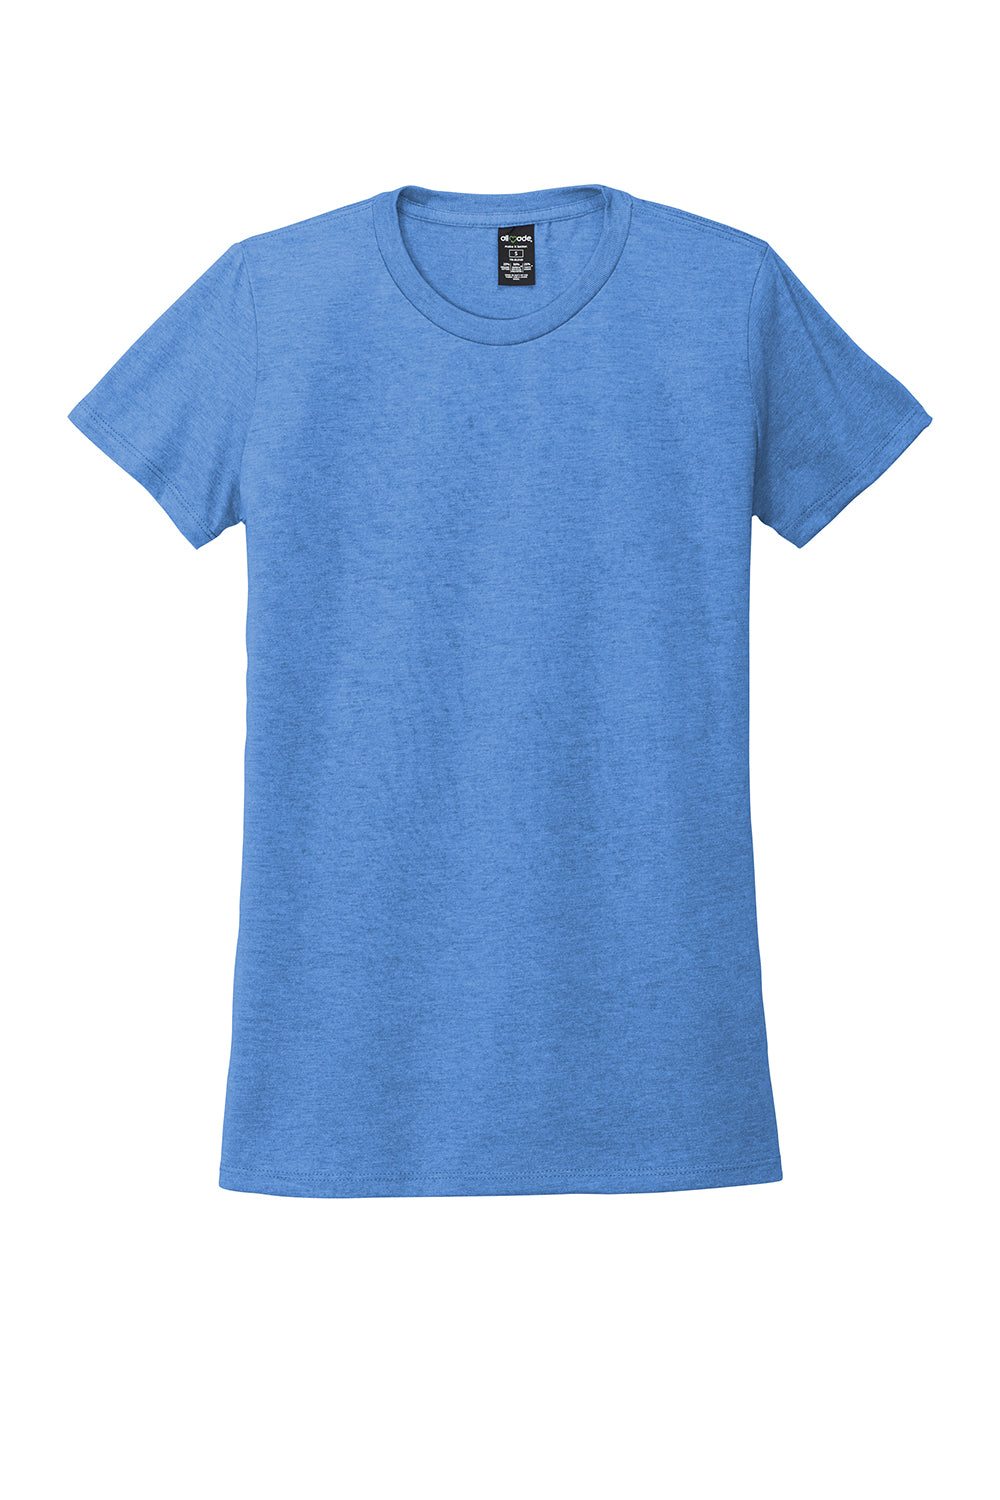 Allmade AL2008 Womens Short Sleeve Crewneck T-Shirt Azure Blue Flat Front